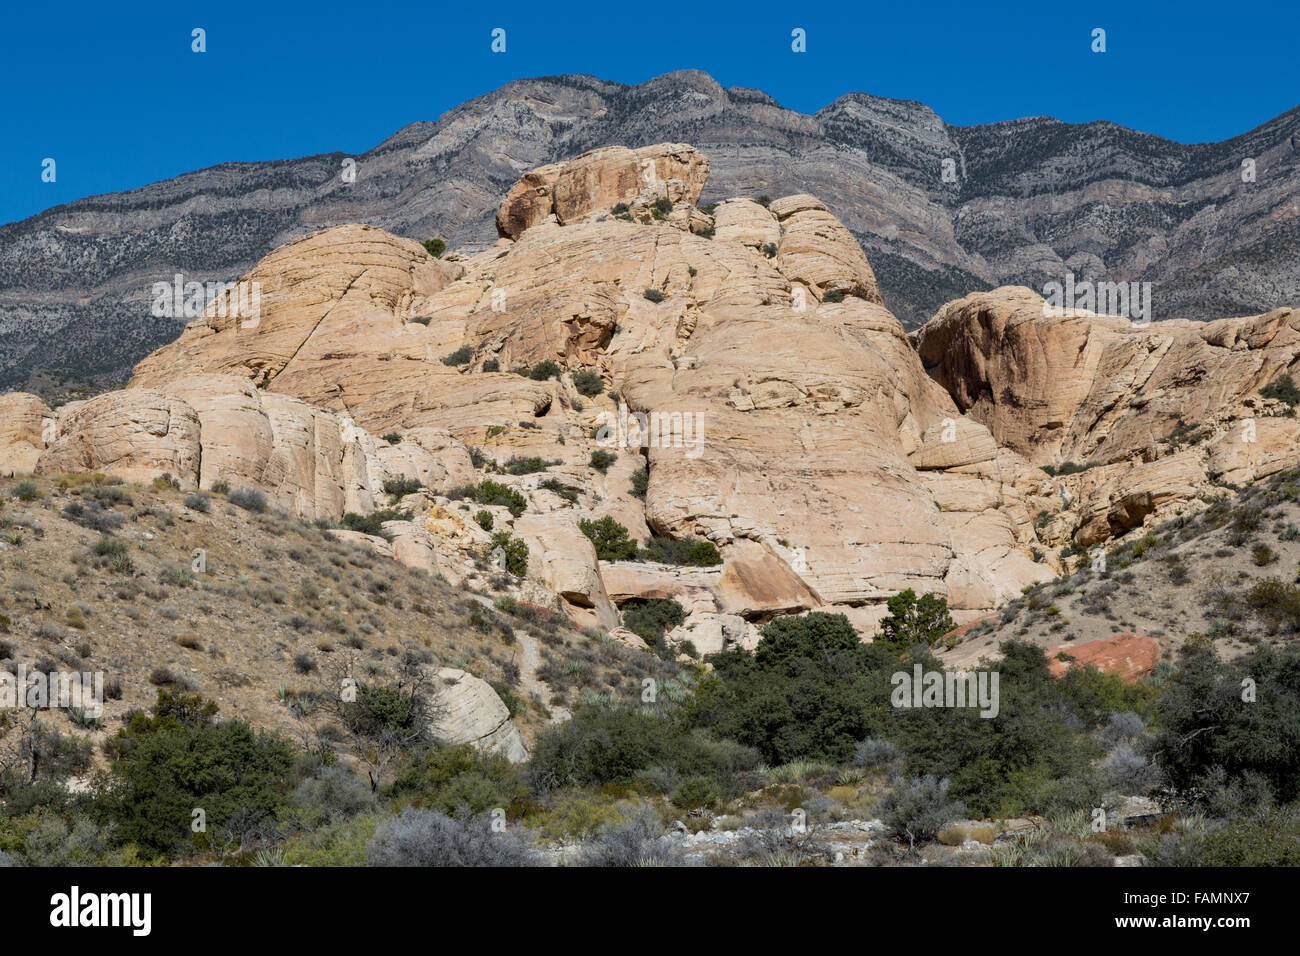 El Red Rock Canyon, en el estado de Nevada. Piedra caliza gris de la madre se alza sobre la montaña arenisca de luz más joven en el trapecio de empuje. Foto de stock